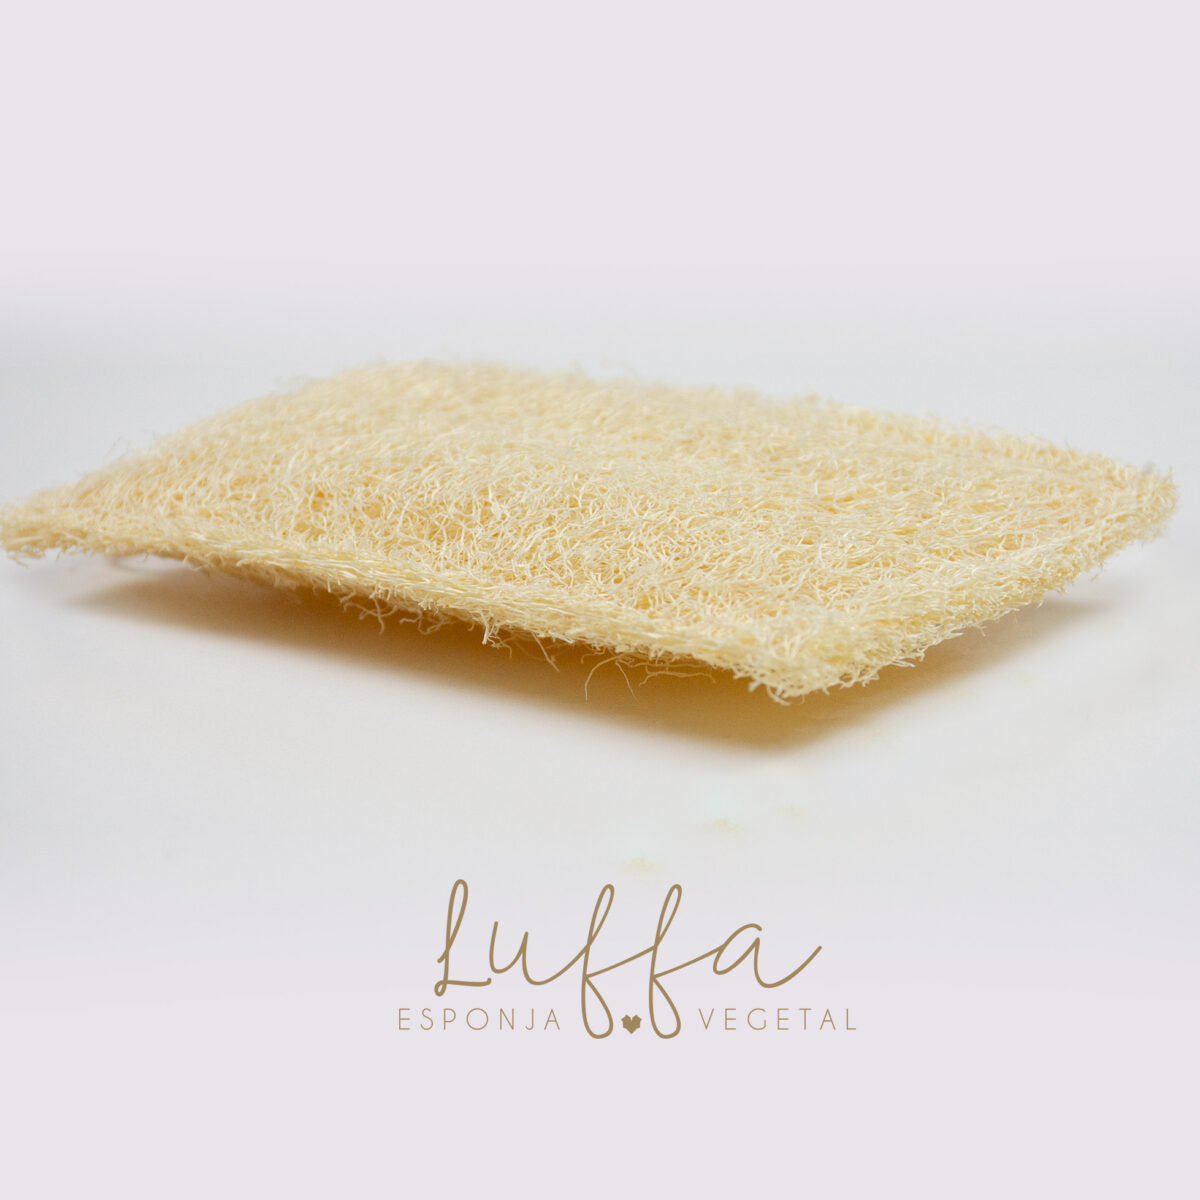 luffa esponja natural para baño esfoliante natural ambato ecuador